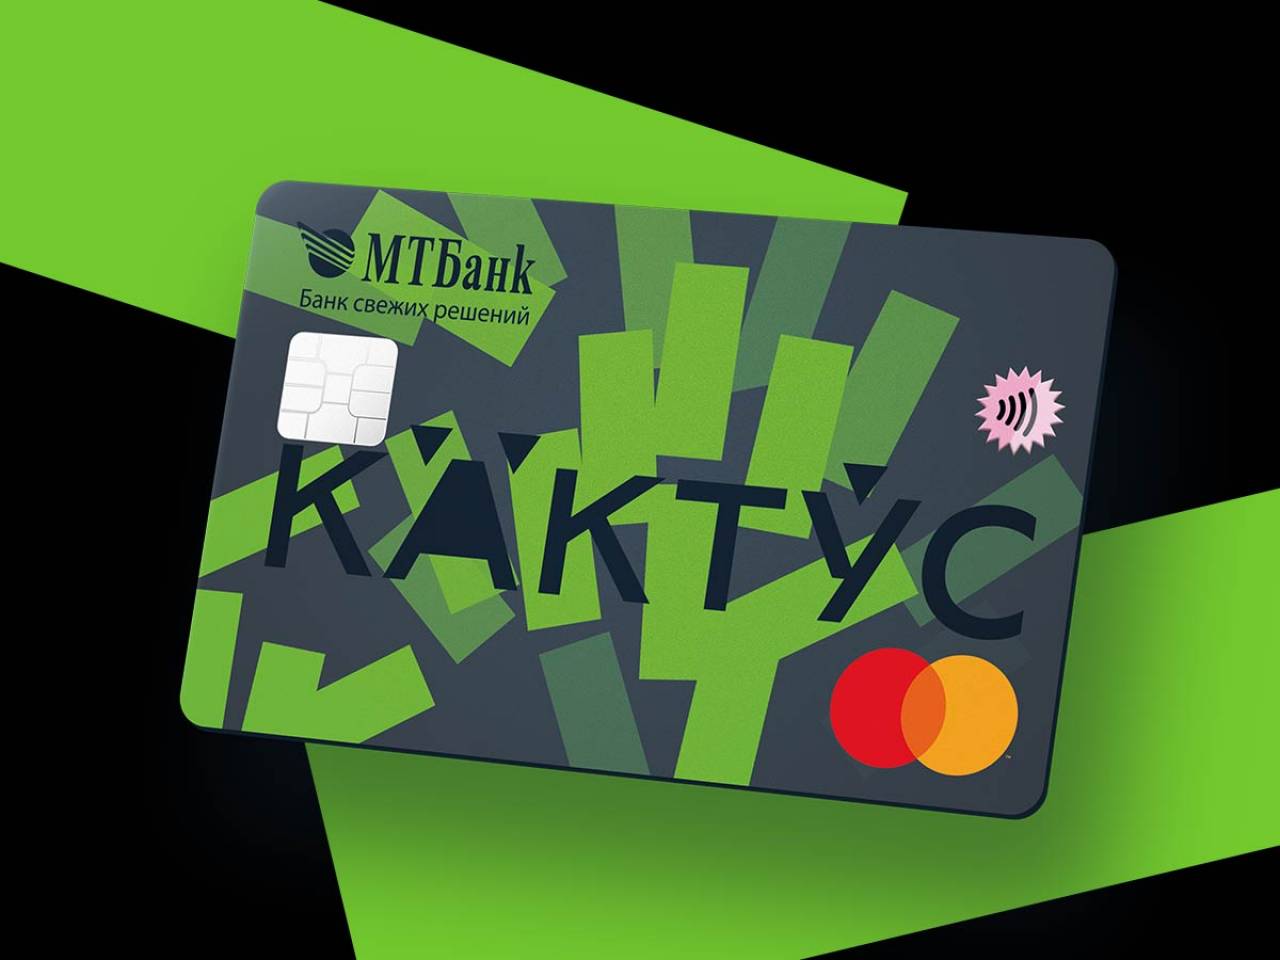 МТБанк и Mastercard запустили карту Кактус, которую пользователь может настроить «под себя»